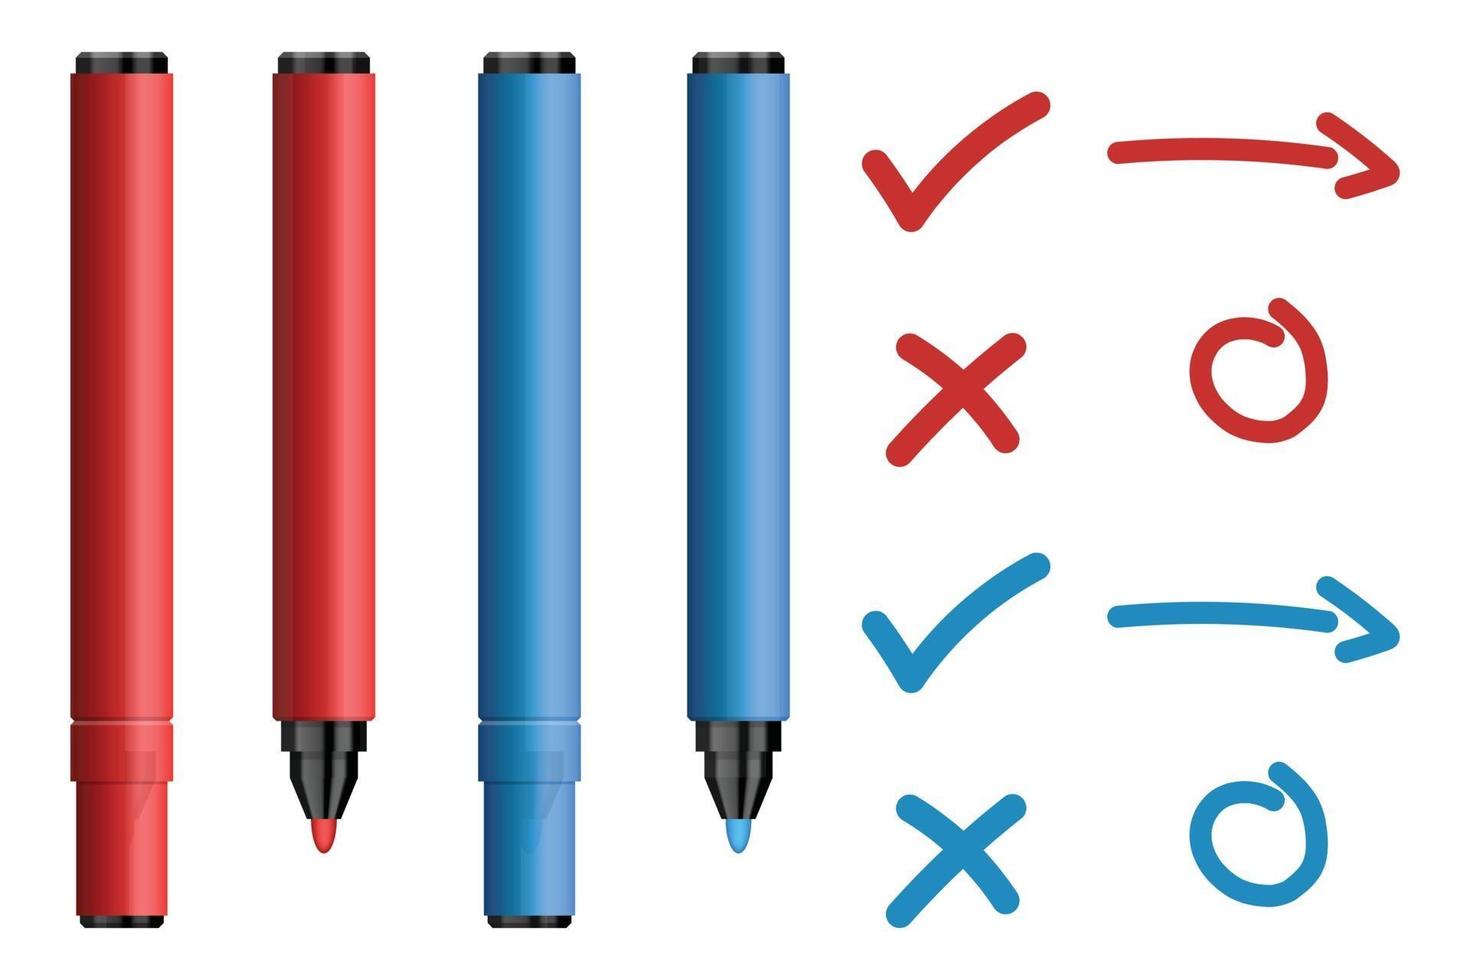 rode en blauwe markeerstiften met teek en kruis tekenreeks vector